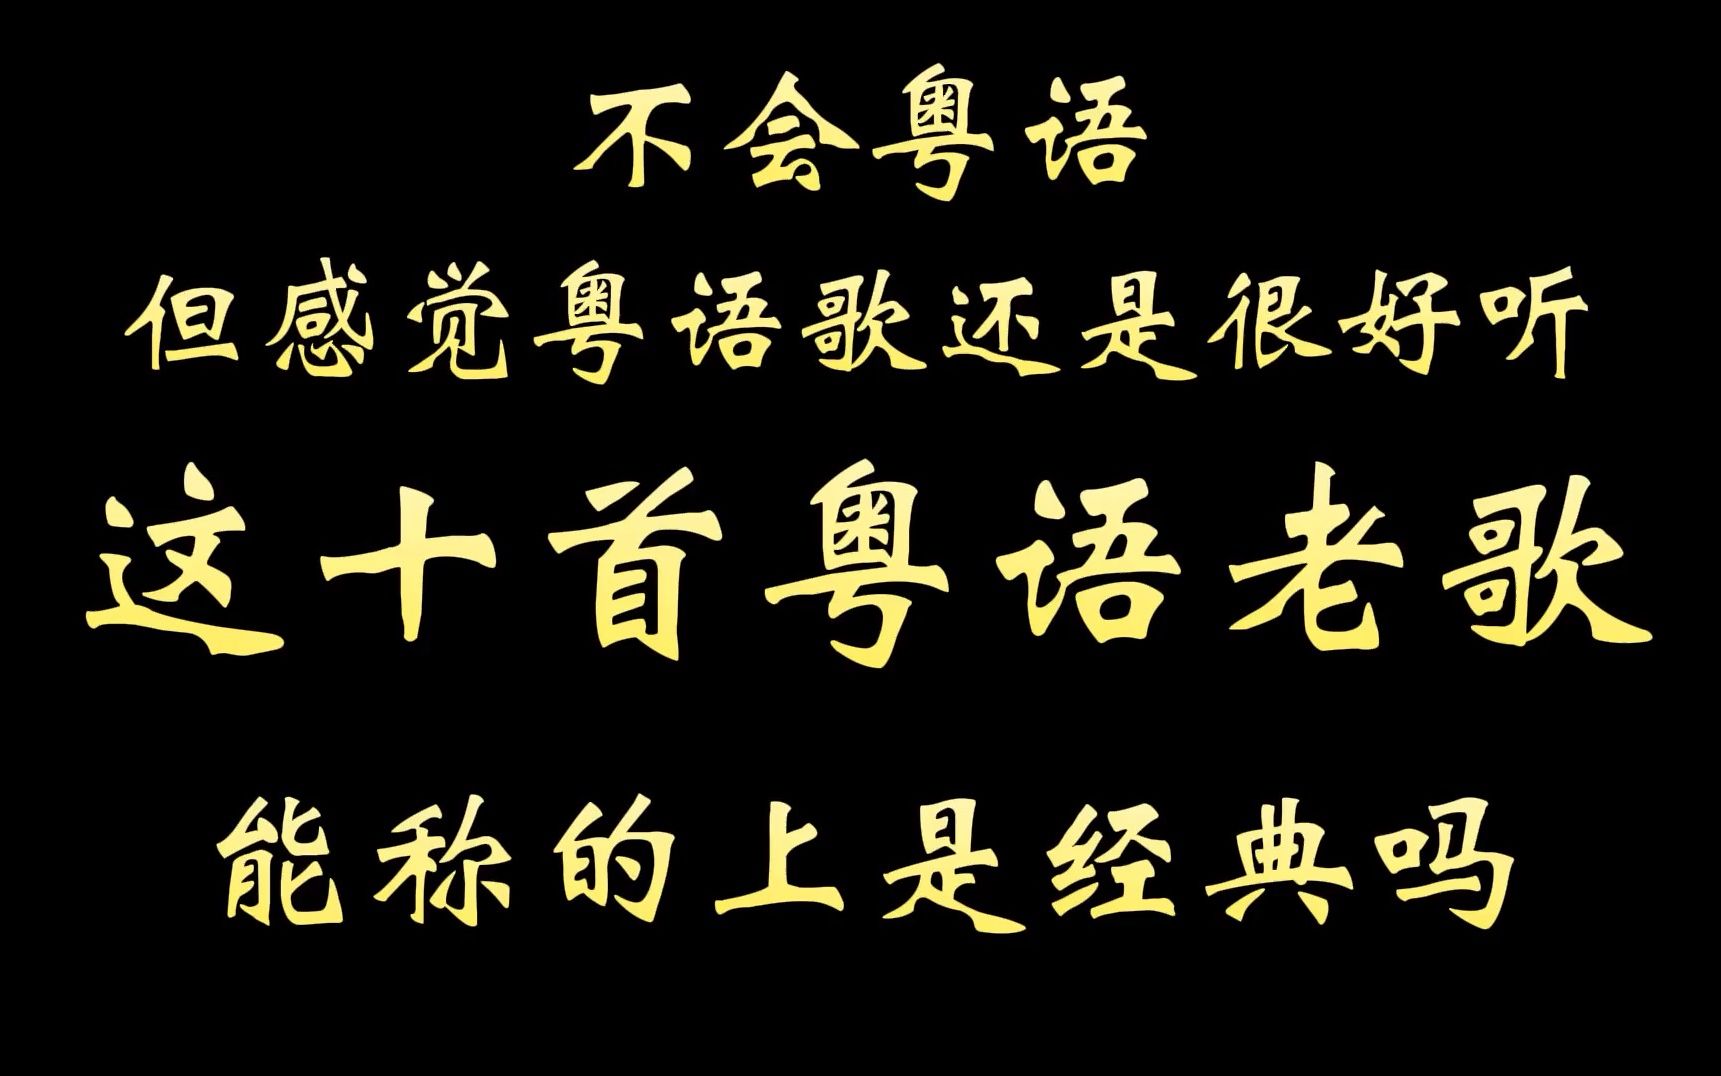 有人说粤语歌已死，没多少人喜欢听了，十首经典粤语老歌